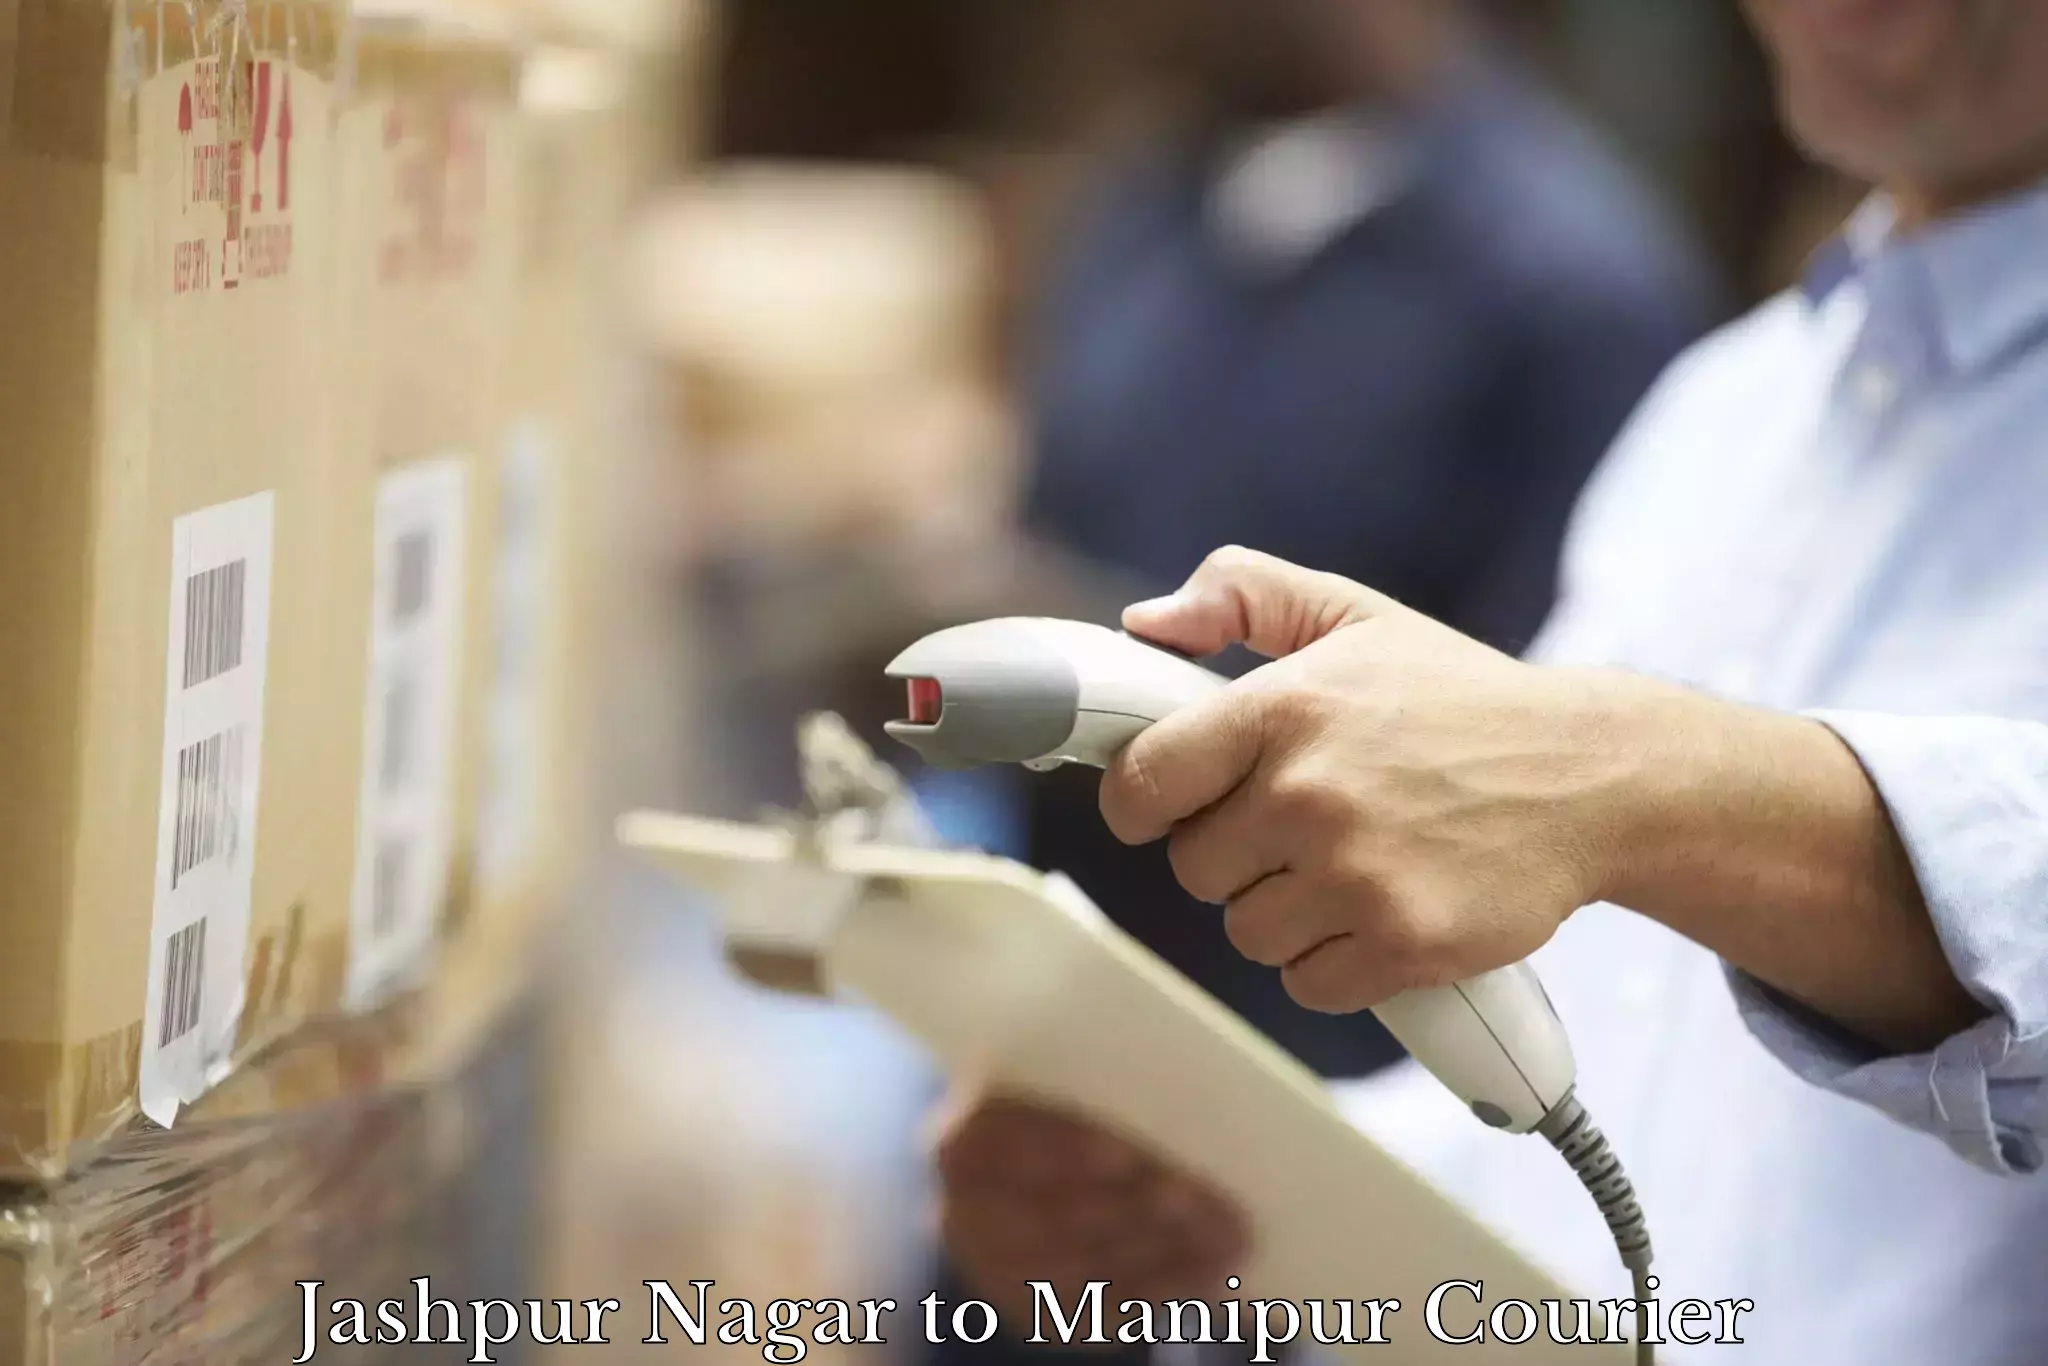 Cash on delivery service Jashpur Nagar to Imphal